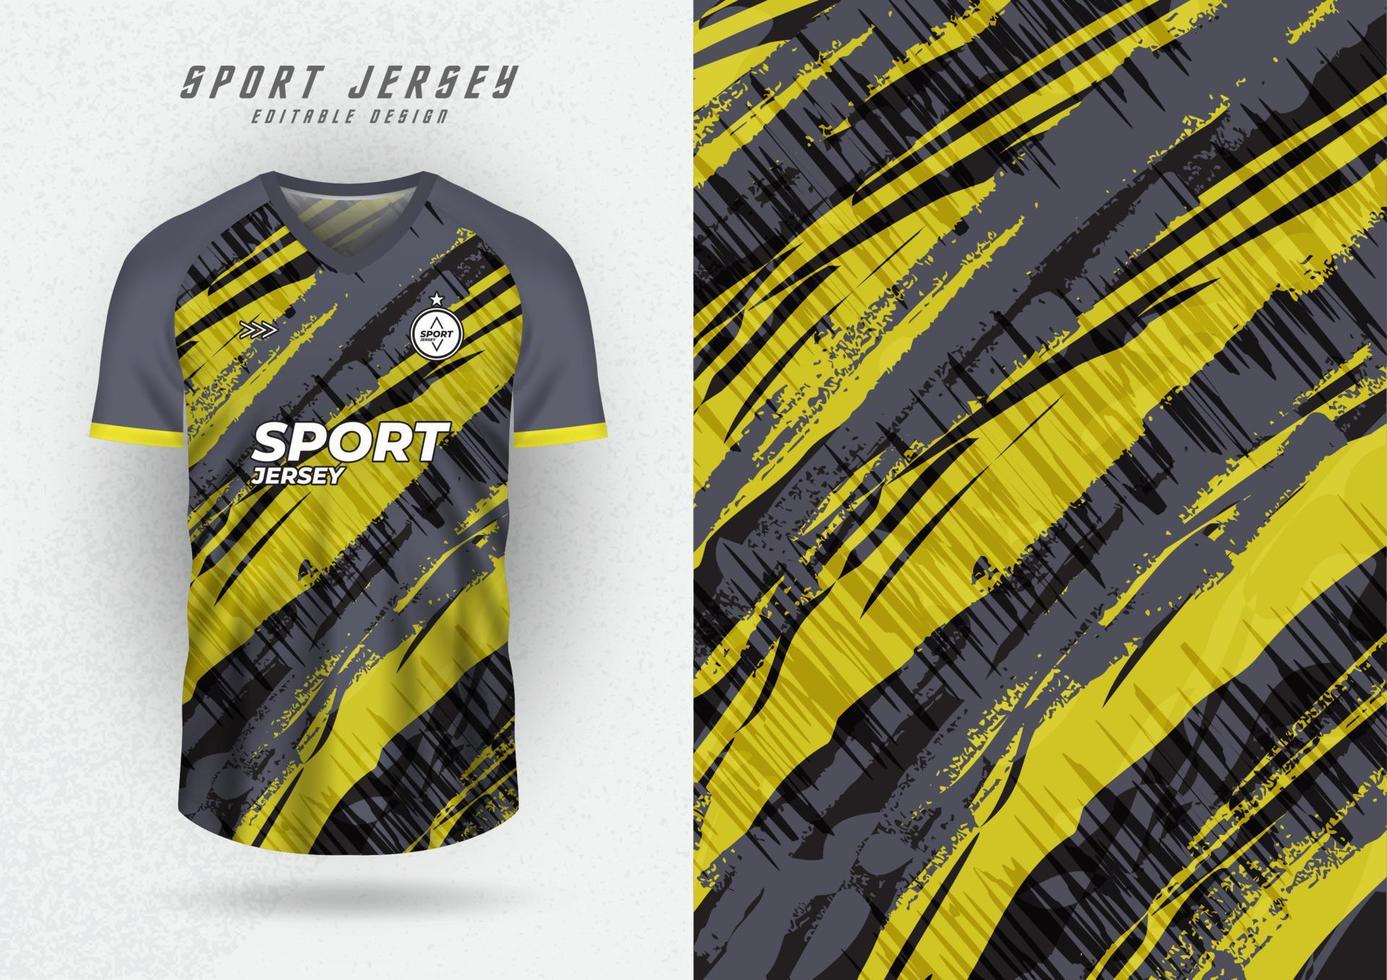 maquette d'arrière-plan pour les maillots de sport, les maillots de course, les chemises de course, le motif incliné jaune-gris pour la sublimation. vecteur